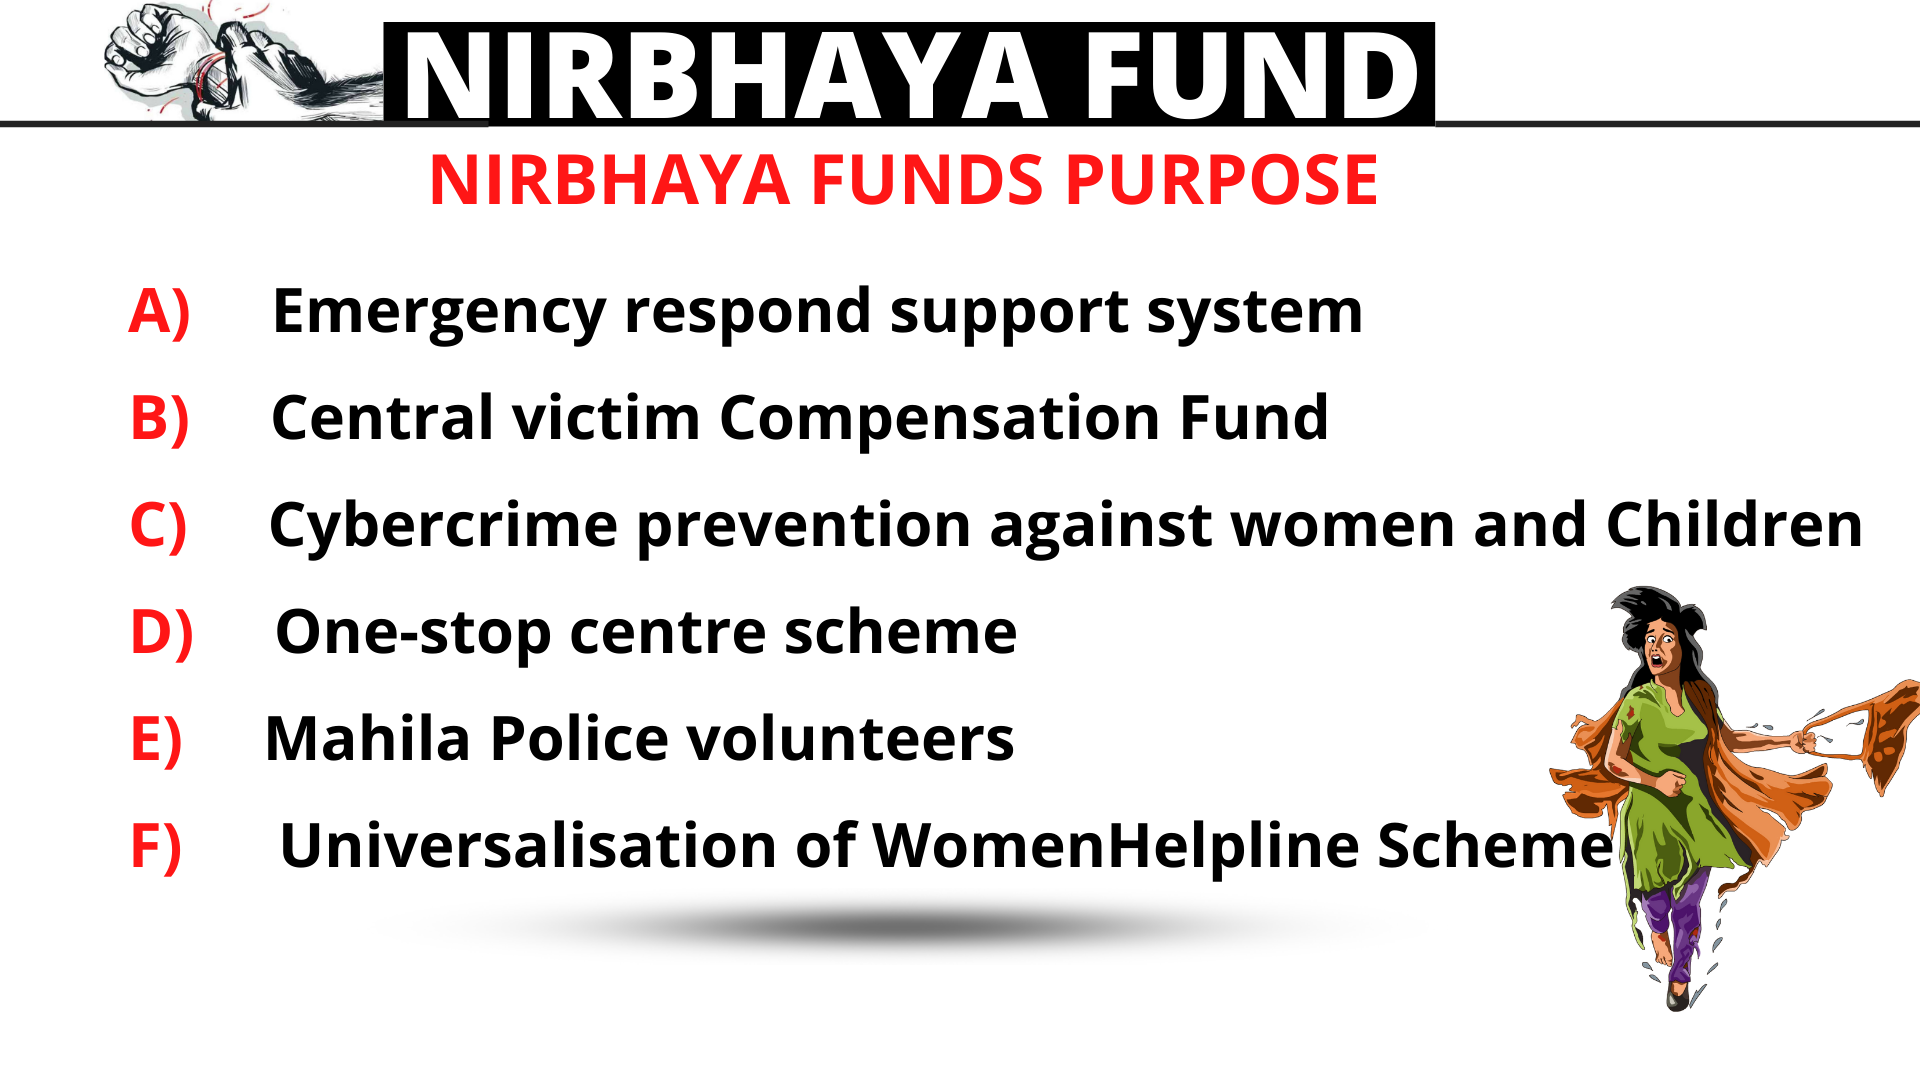 Purpose of Nirbhaya fund